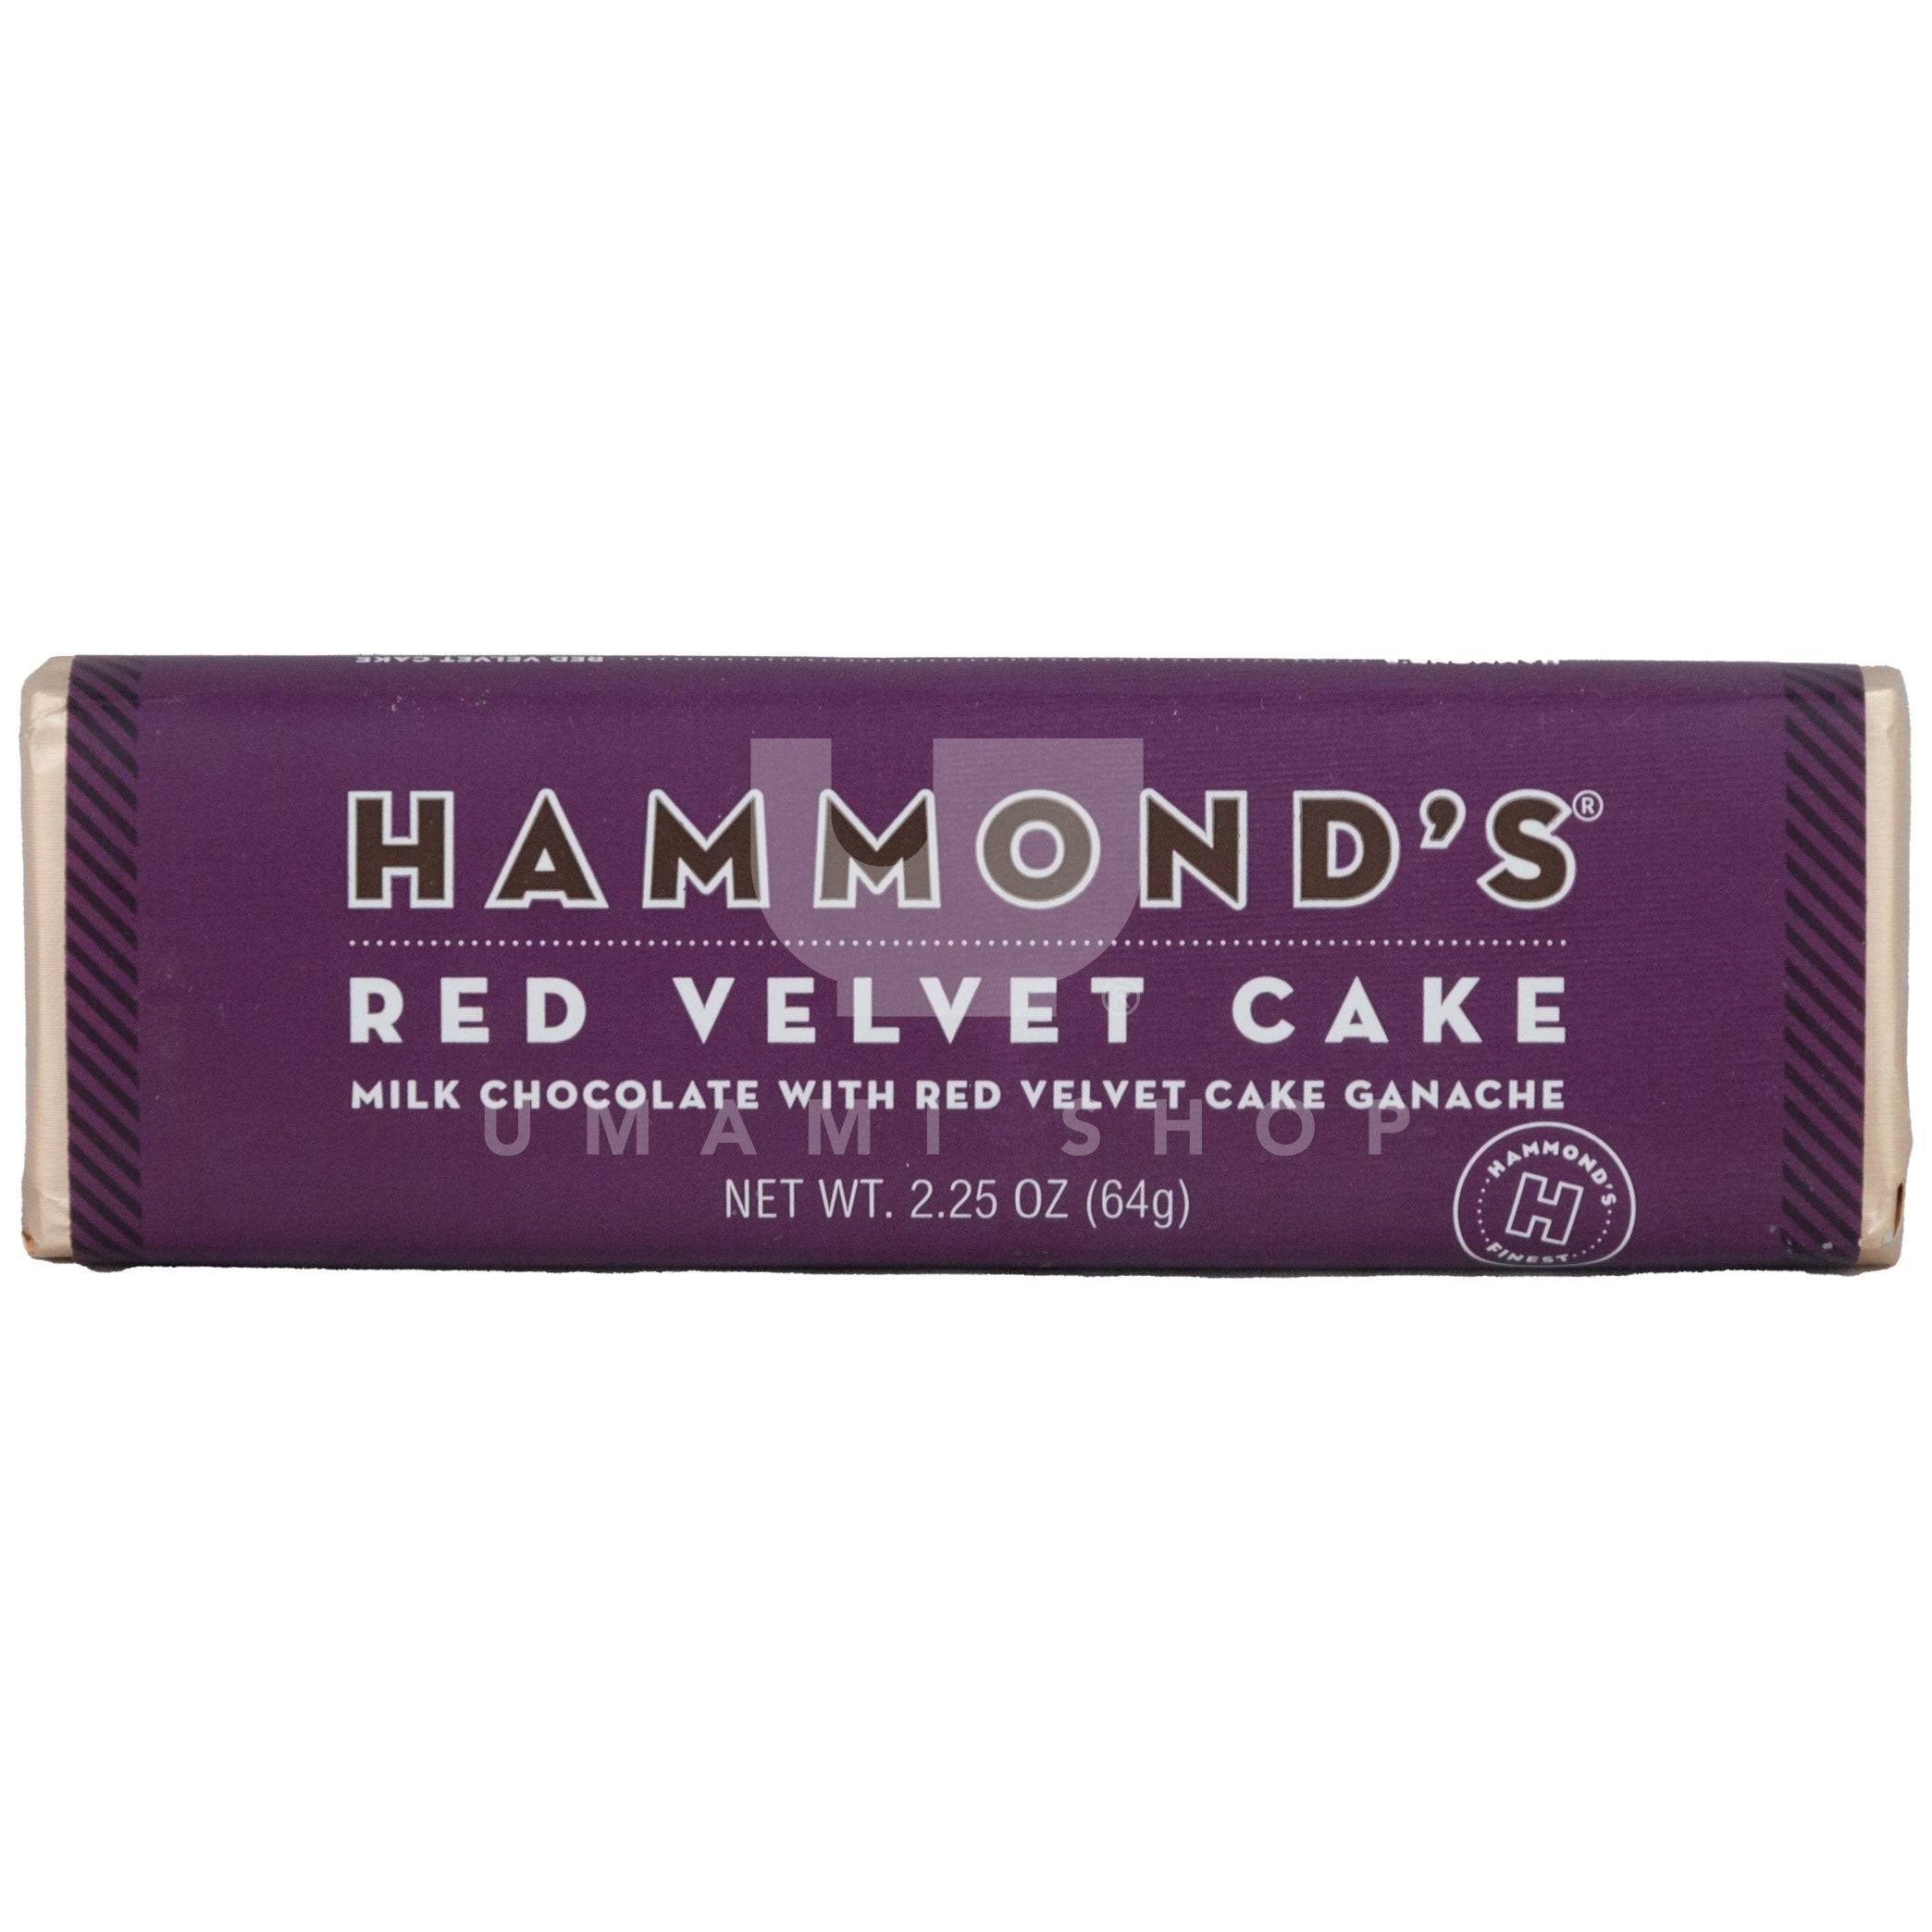 Hammond's Milk Chocolate Filled With Red Velvet Cake Ganache